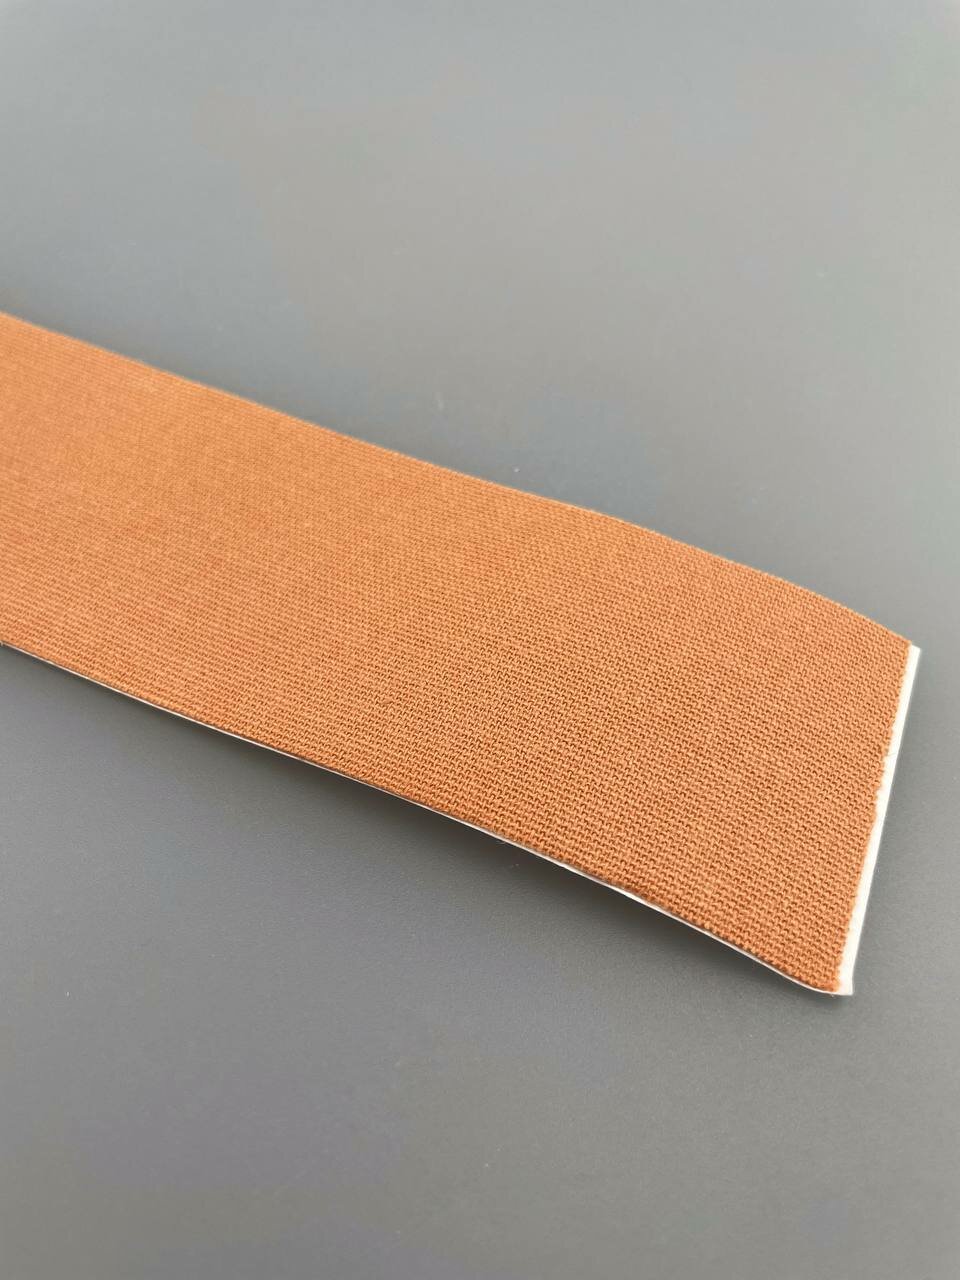 Кинезио тейп лента фиксационная пластырь эластичный для тела от отеков и растяжек водостойкий, цвет телесный 5смх5м - 1 шт